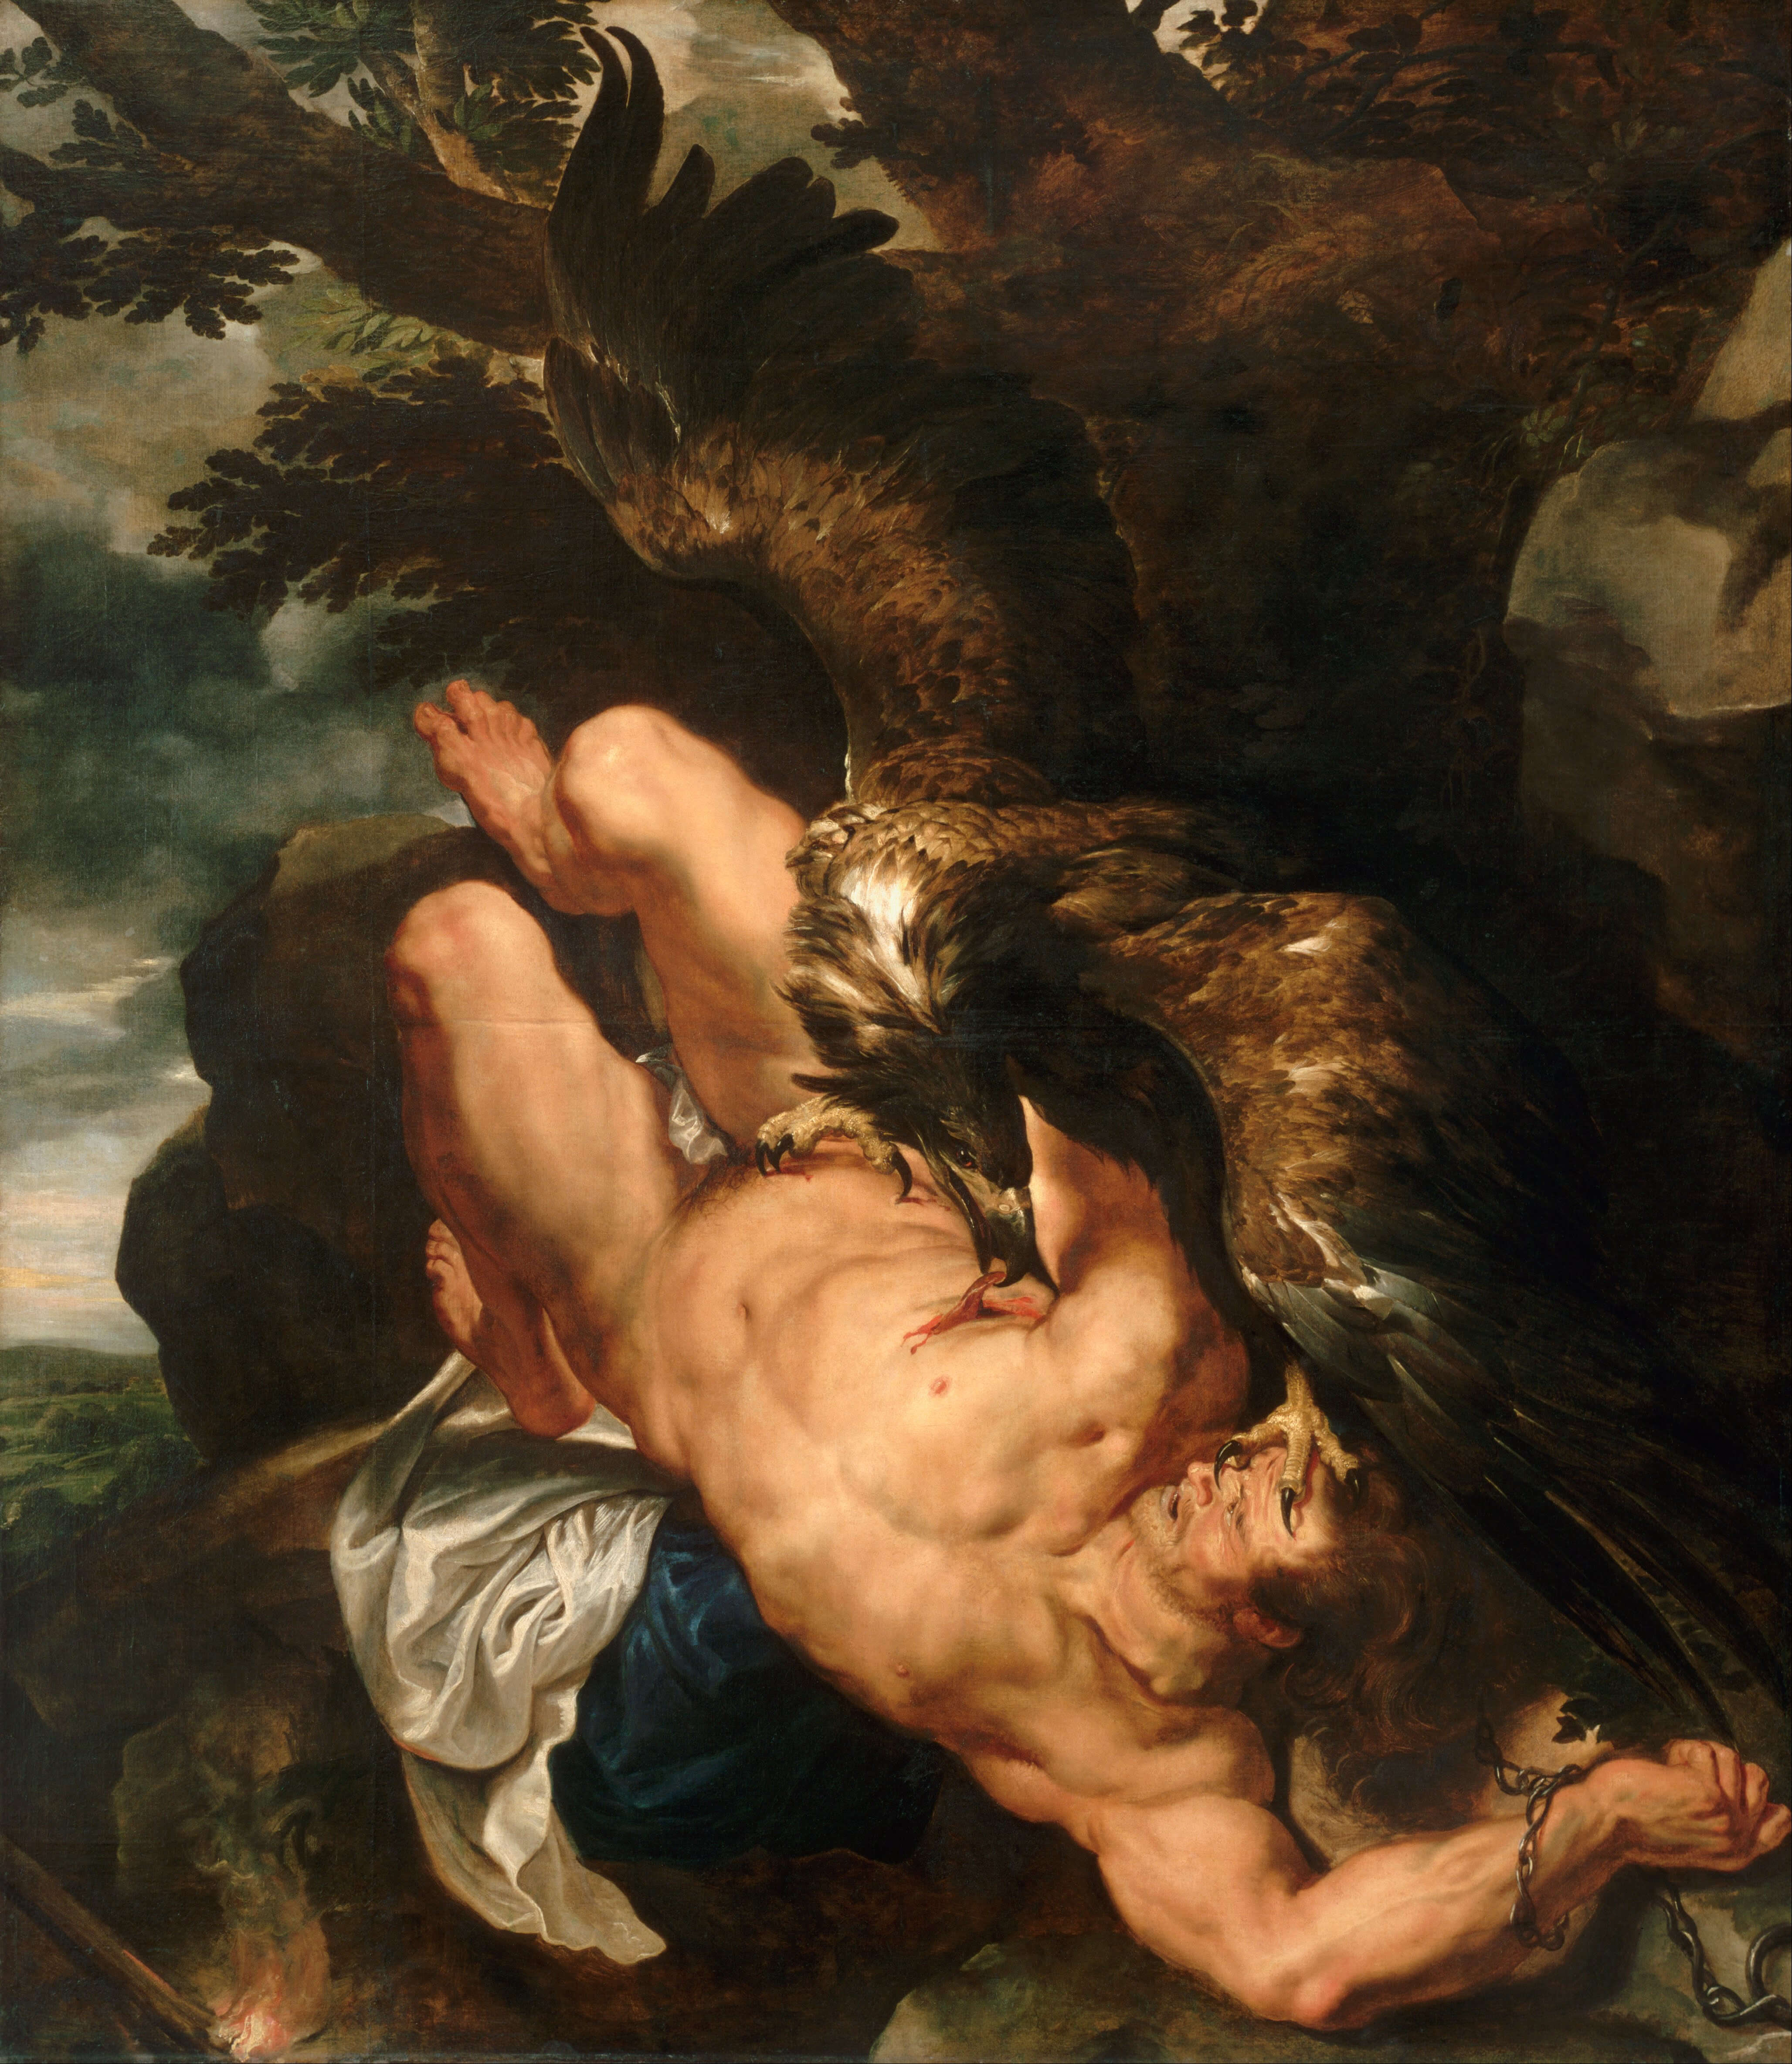 Dams-Prometheus Bound by Peter Paul Rubens